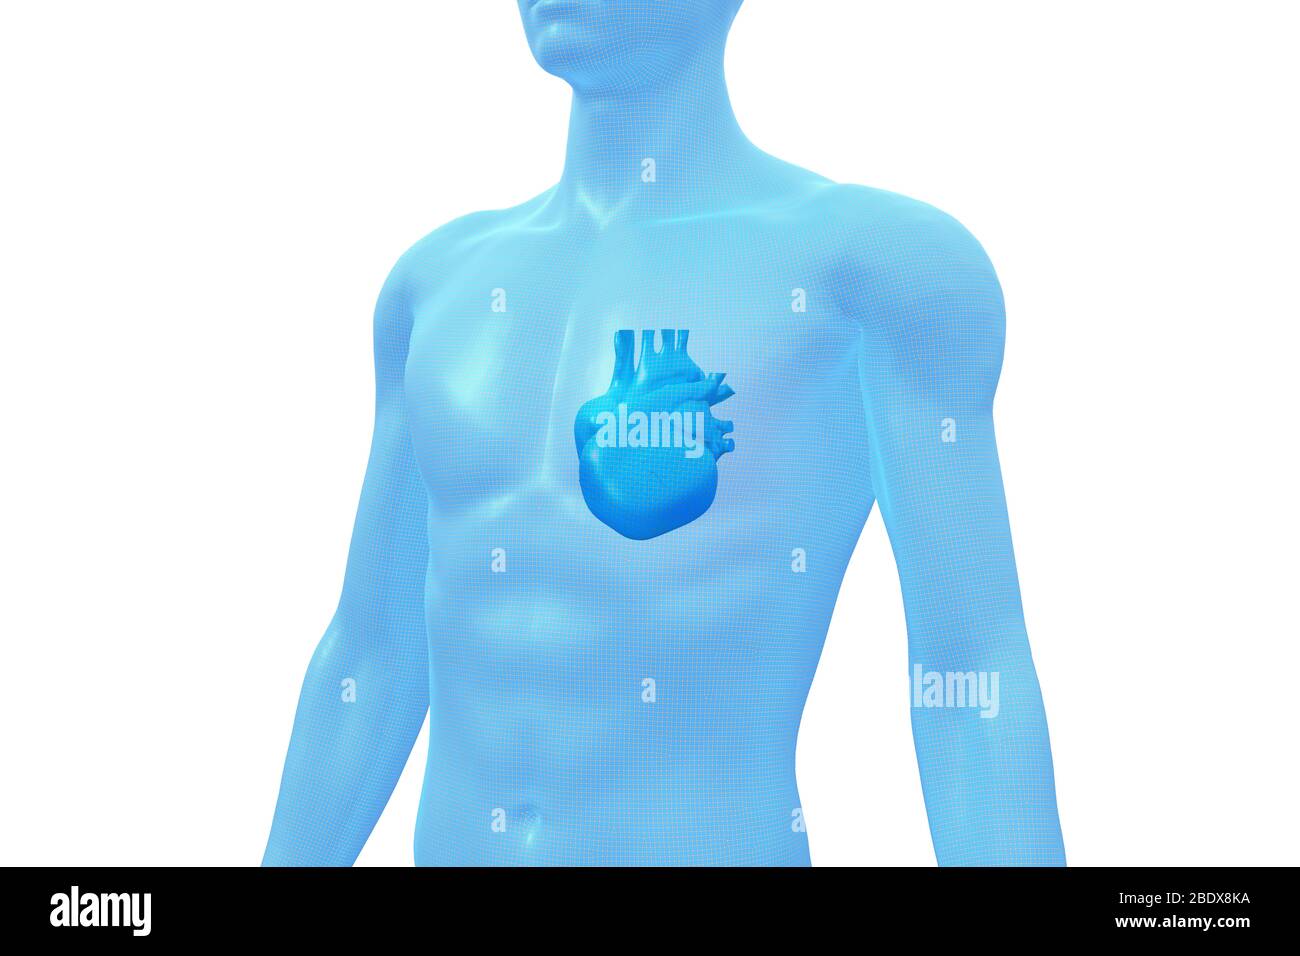 Cuore, organo del corpo umano, modello 3D medico Foto Stock